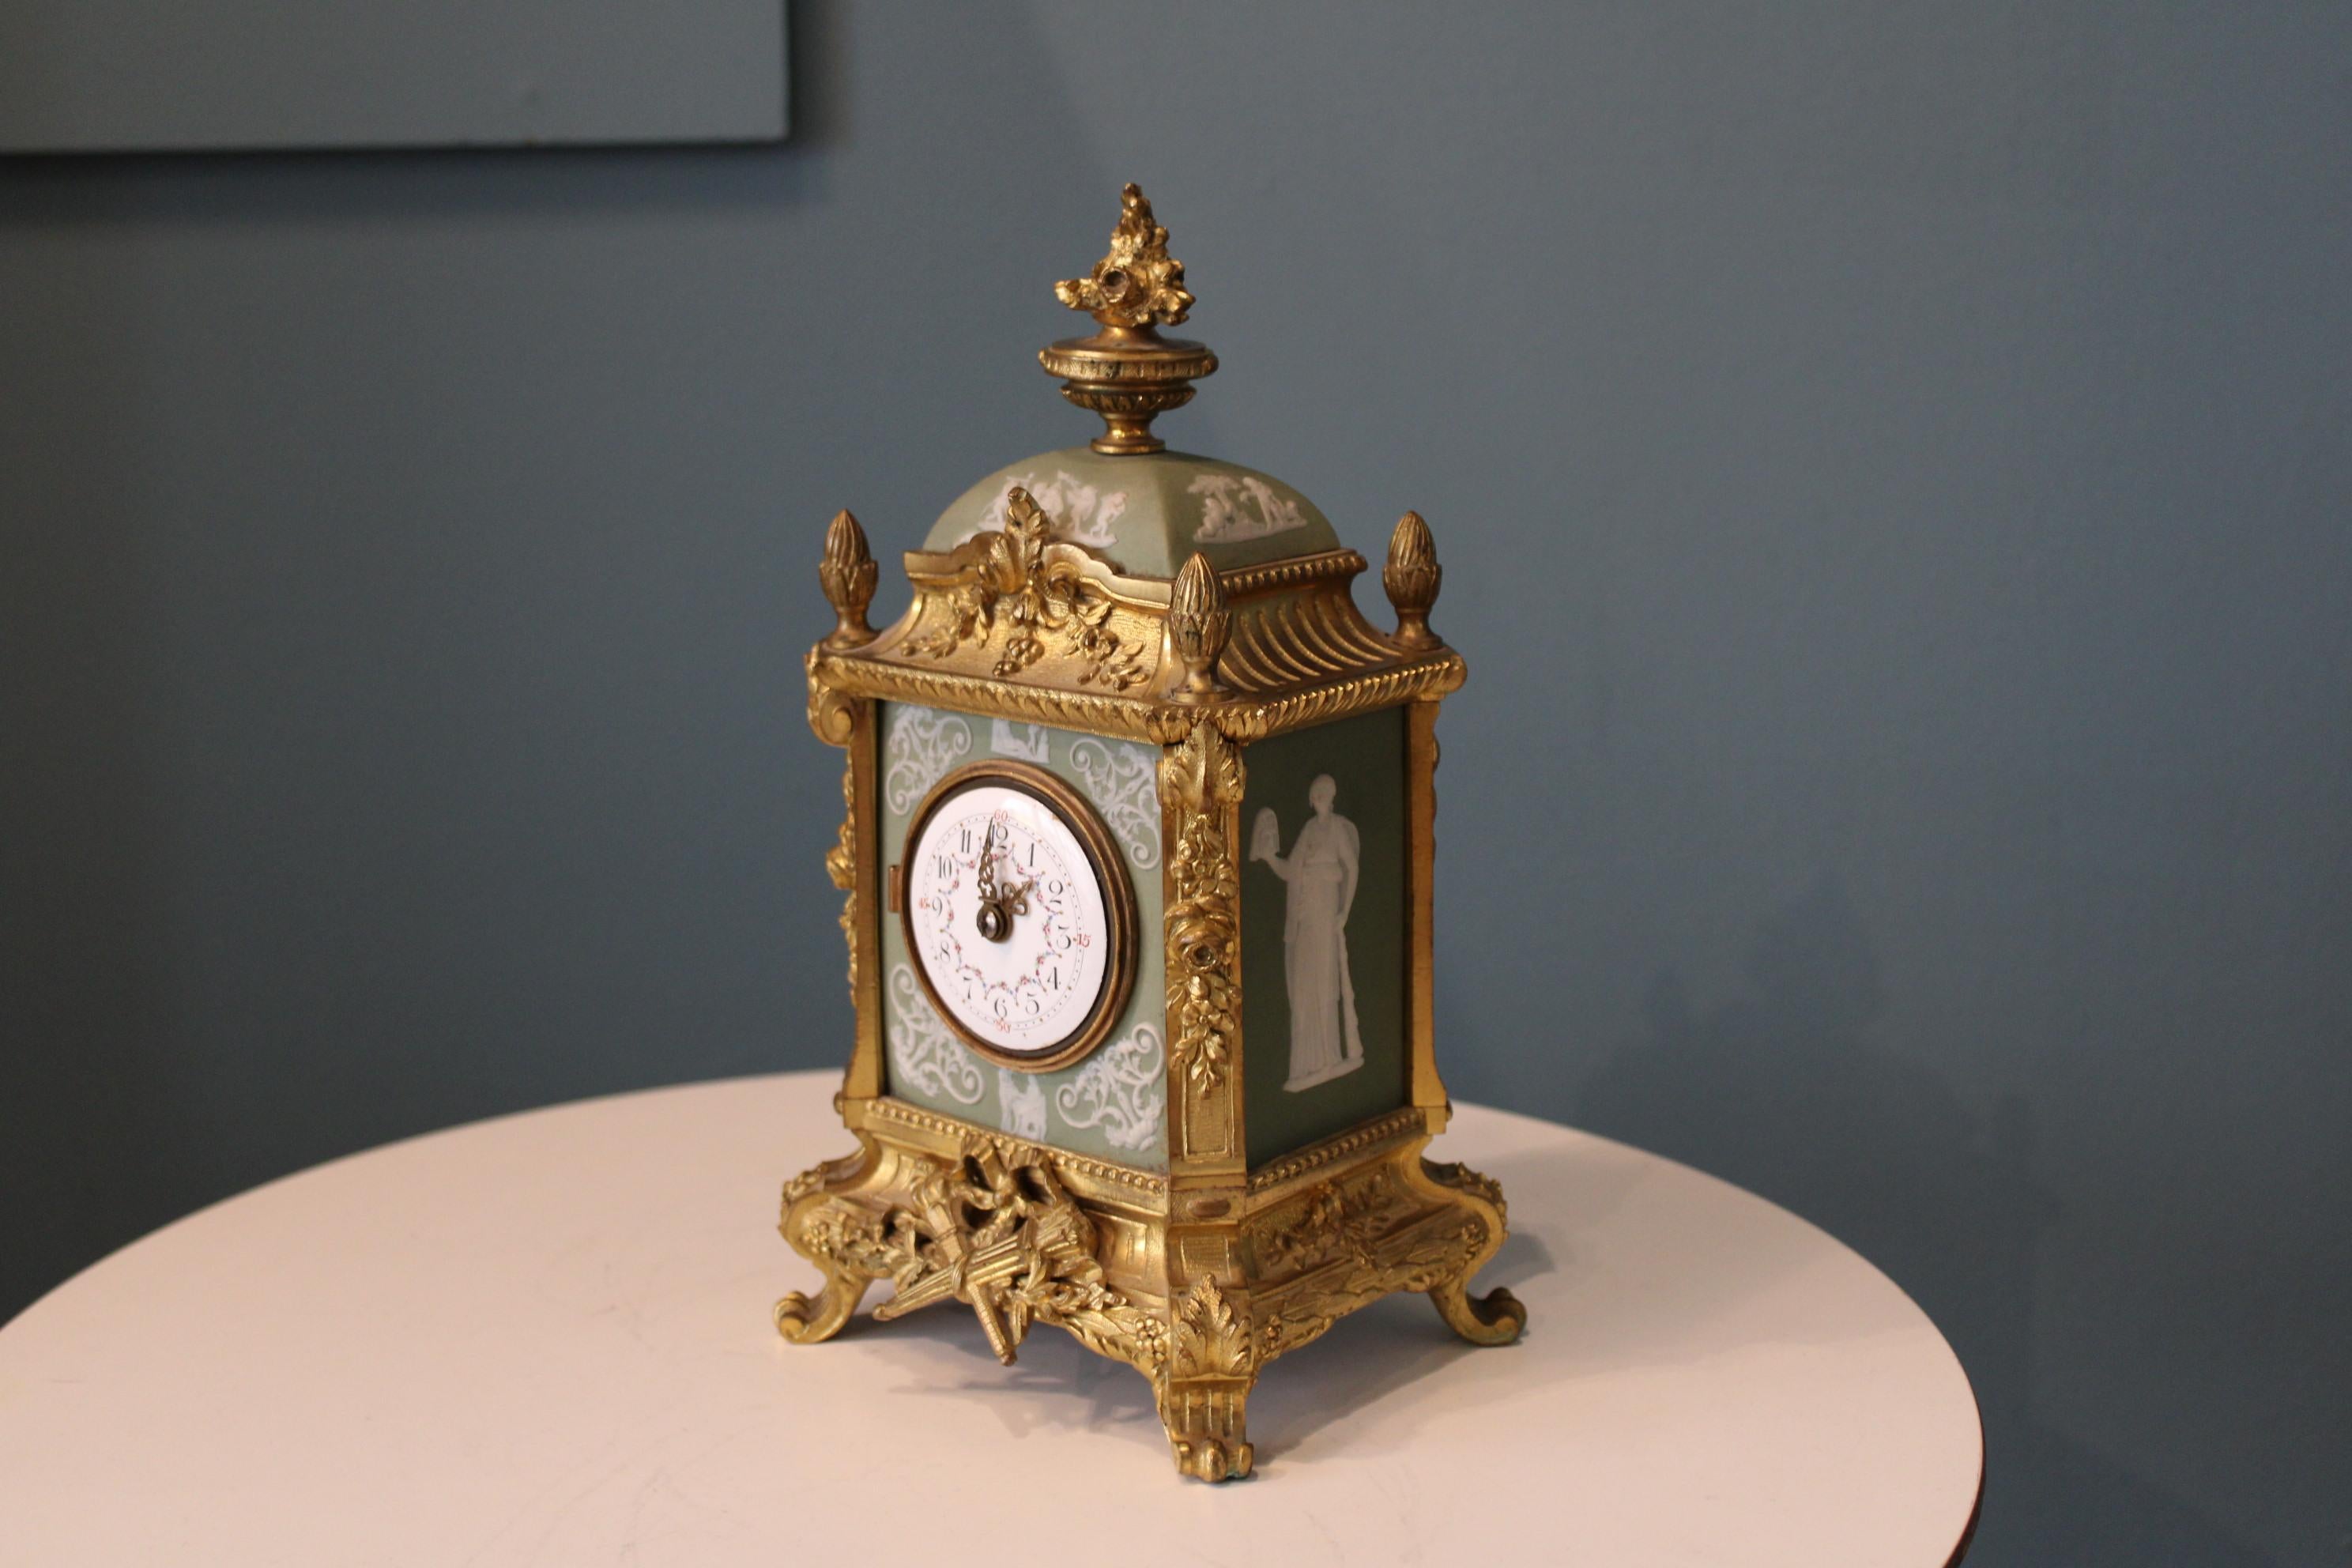 Petite horloge napoléonienne.
Style Second Empire.
France, 19ème siècle.

L'horloge ne fonctionne pas.